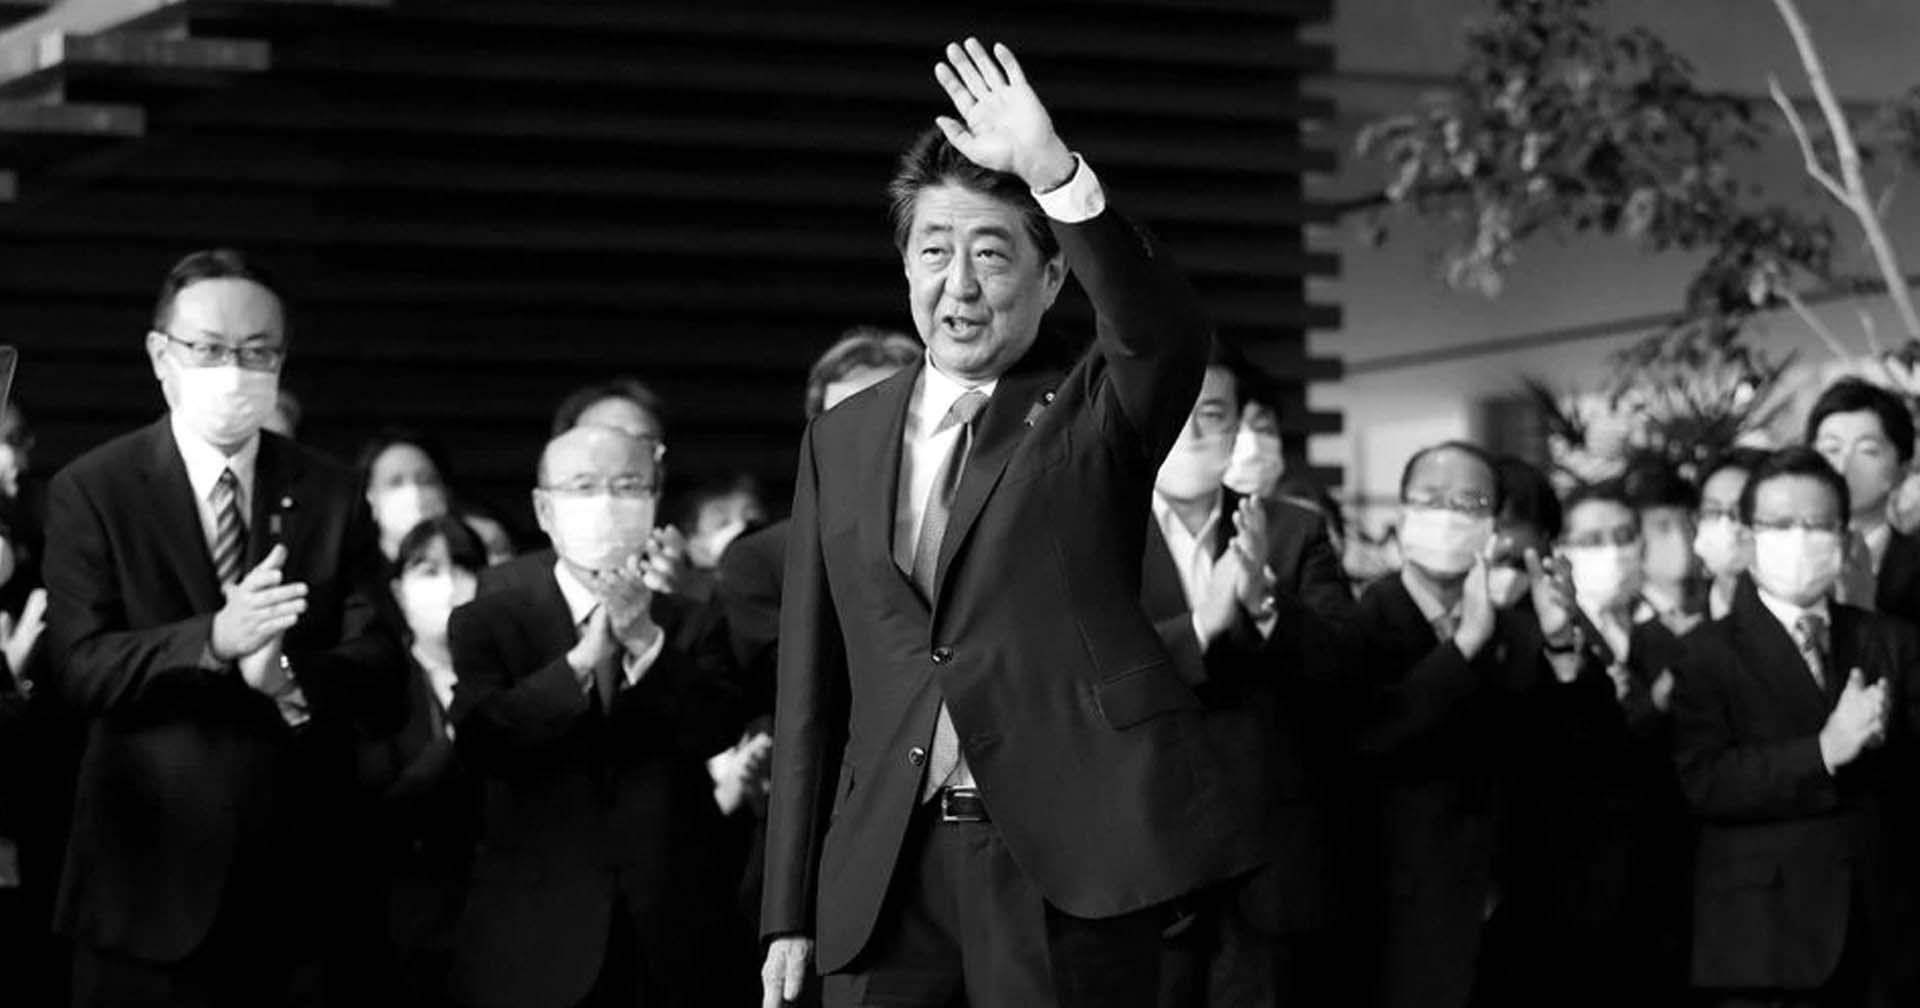 ประวัติ ‘ชินโซ อาเบะ’ นายกรัฐมนตรีญี่ปุ่นที่ดำรงตำแหน่งยาวนานที่สุด